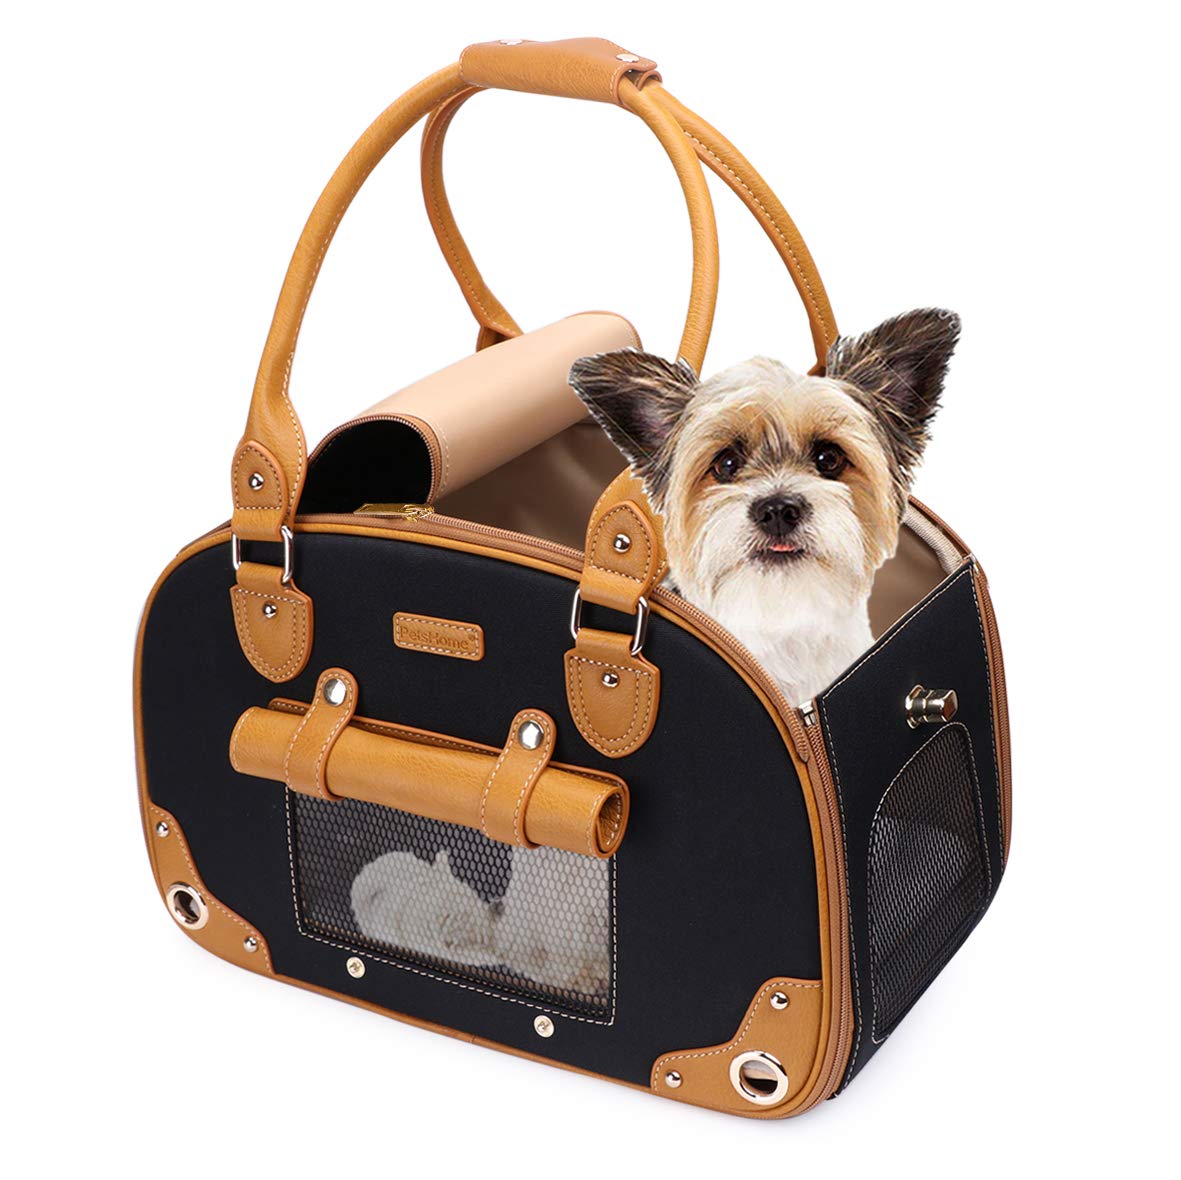 Petshome Dog Carrier Purse, Pet Carrier, Cat Carrier, Foldable Waterproof Premium Nylon Pet Travel Portable Bag Carrier For Cat 